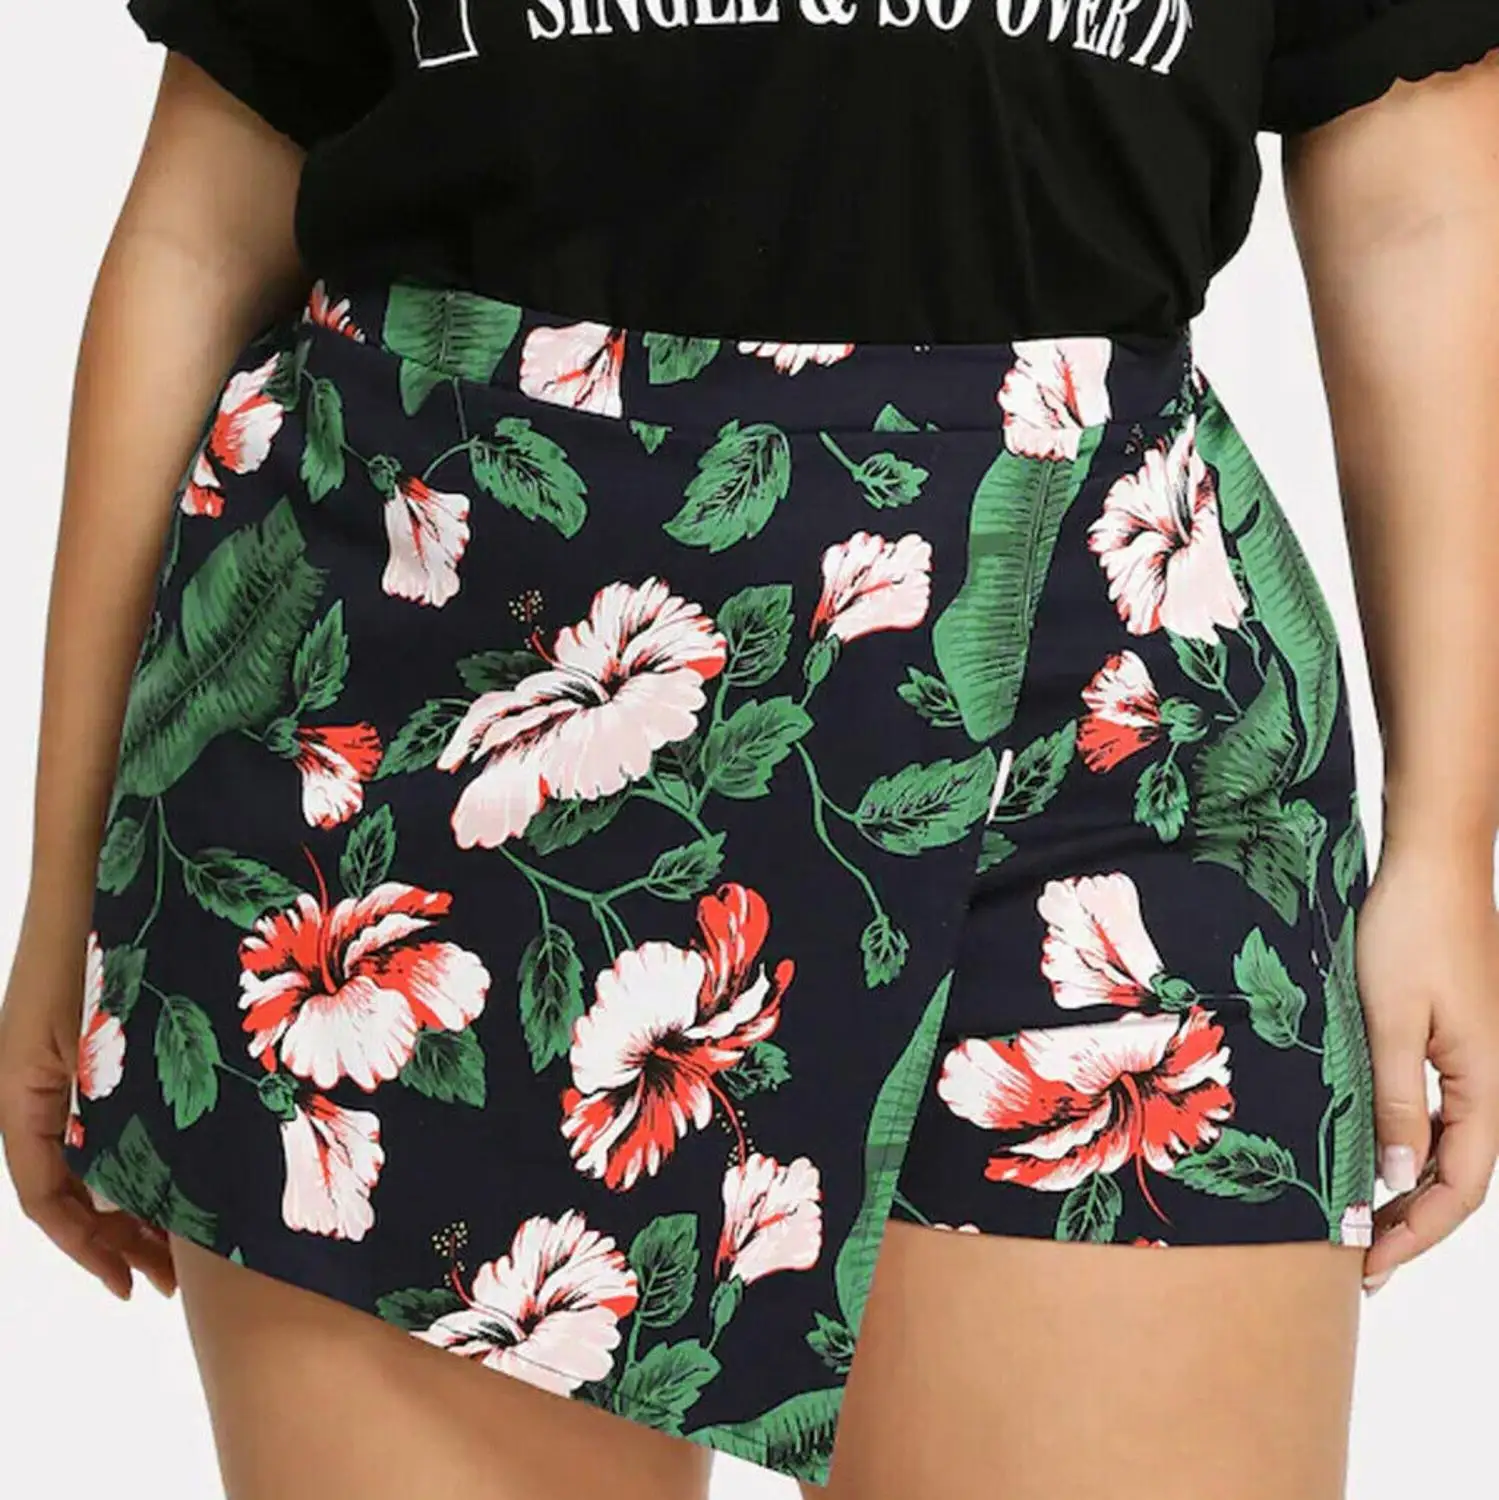 Плюс размер женские цветочные горячие брюки летние шорты пляжный с завышенной талией спортивные брюки сексуальные трусы шорты женские